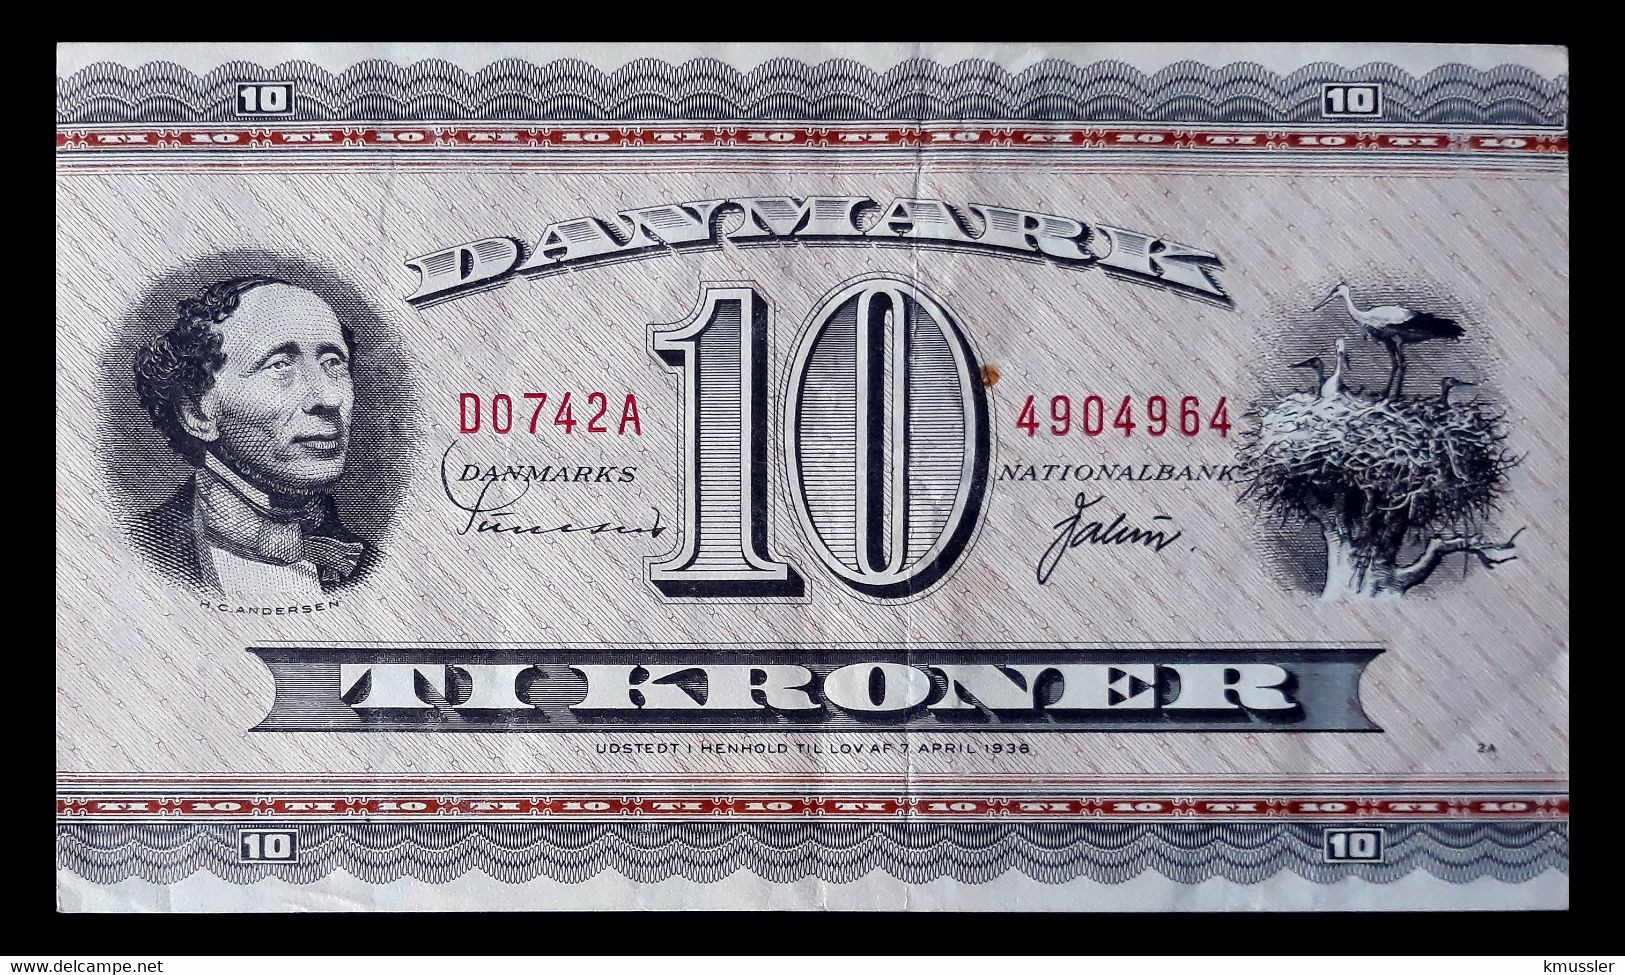 # # # Banknote Dänemark (Denmark) 10 Kroner 1936 # # # - Dinamarca